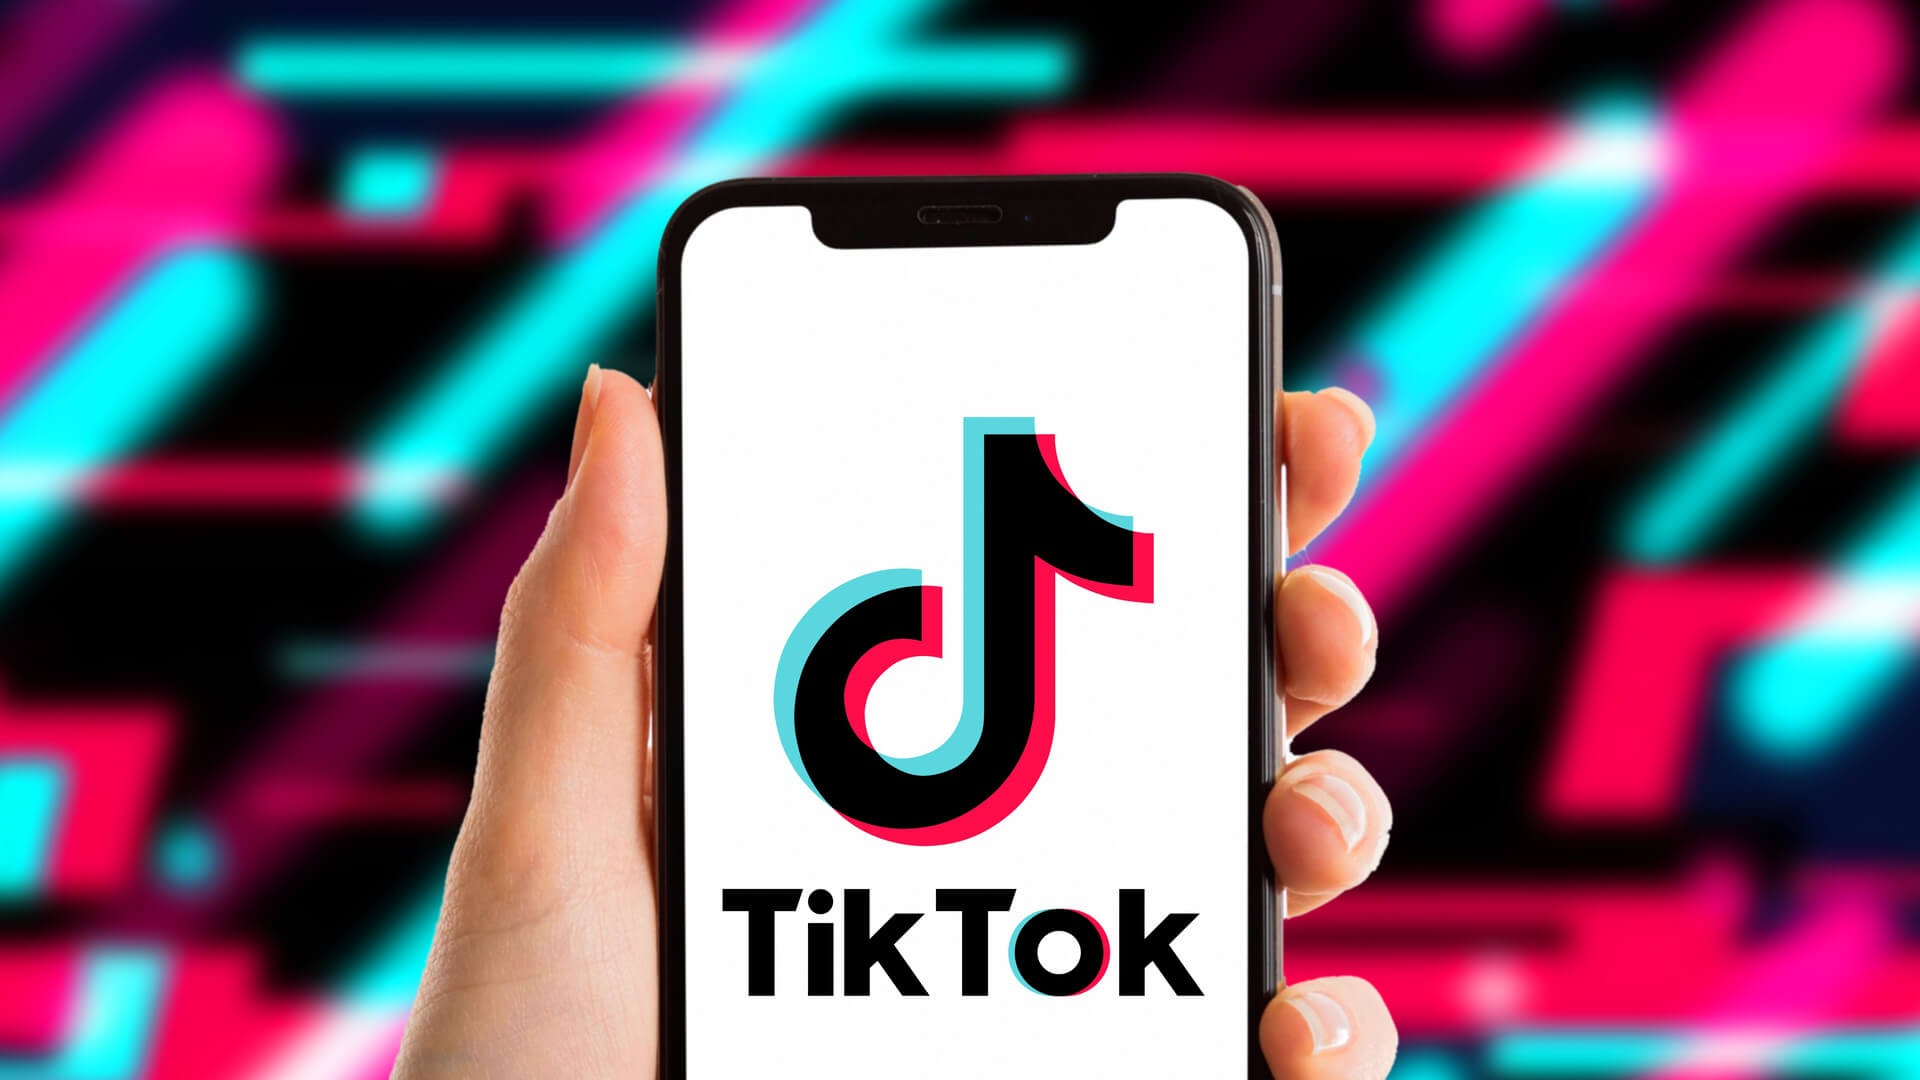 Đăng ảnh kèm nhạc nền trên TikTok là một trào lưu đang rất được yêu thích hiện nay. Hãy tham gia và chia sẻ cảm xúc của bạn với mọi người thông qua ảnh và âm nhạc trong các video ngắn này.